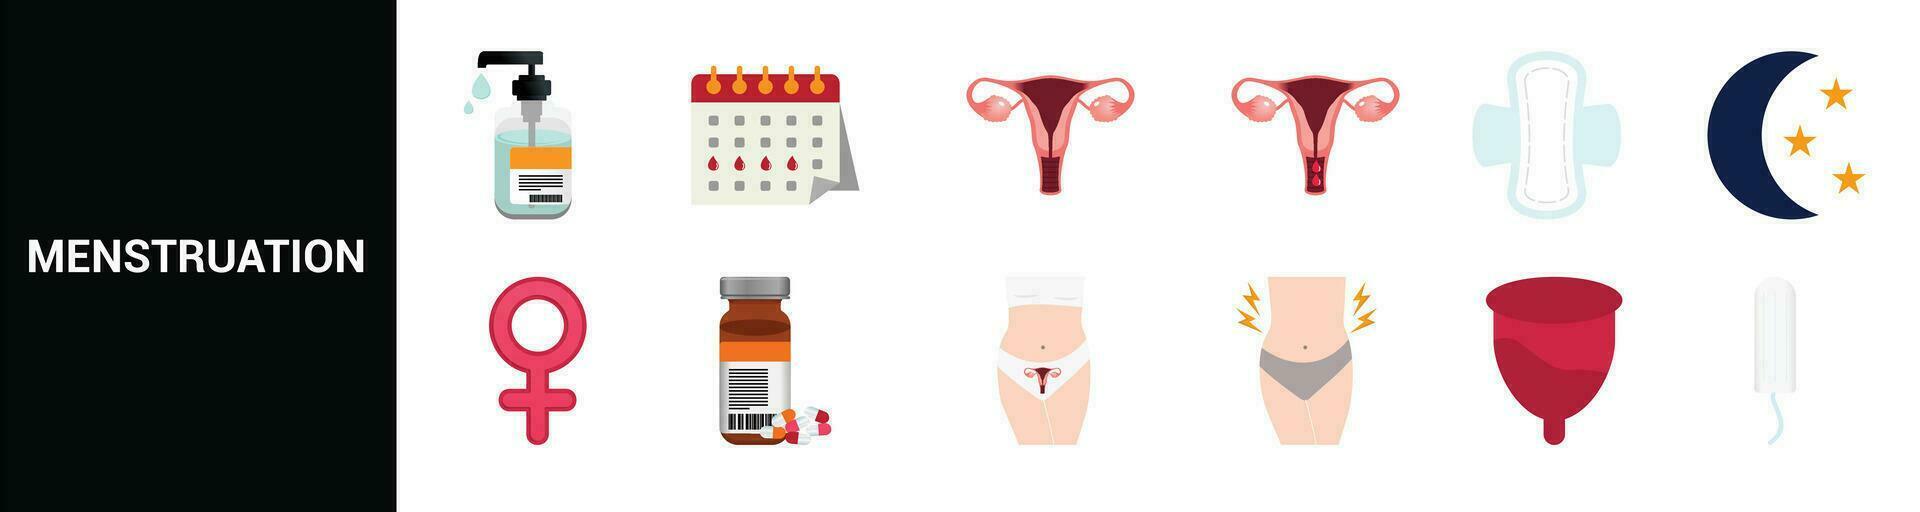 vetor conjunto do ícones menstruação